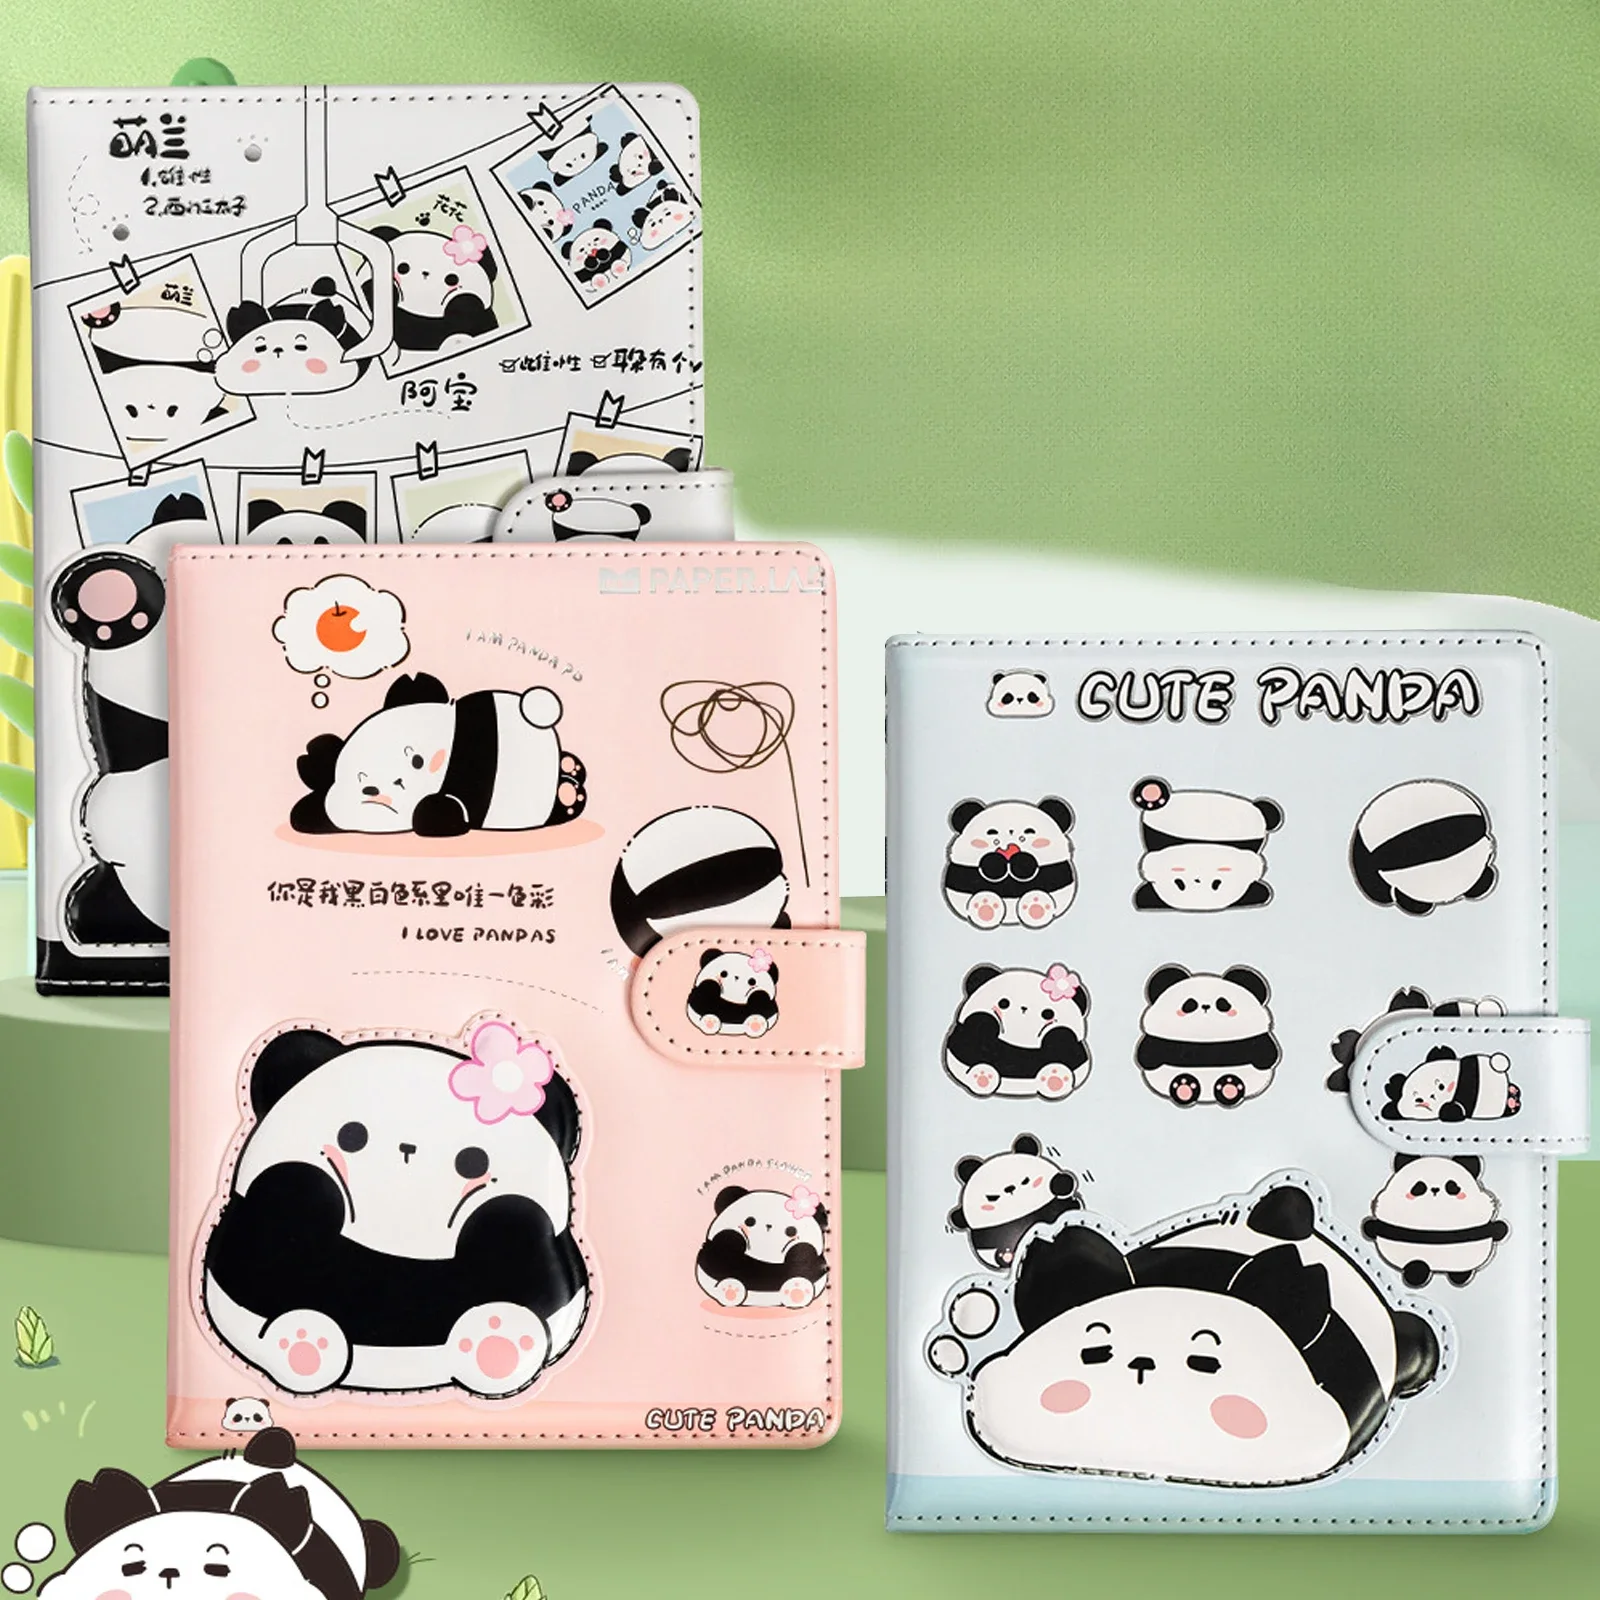 Cute Panda Notebook Agenda Organizer diario blocco note Agenda settimanale calendario diario cancelleria materiale scolastico regali di natale